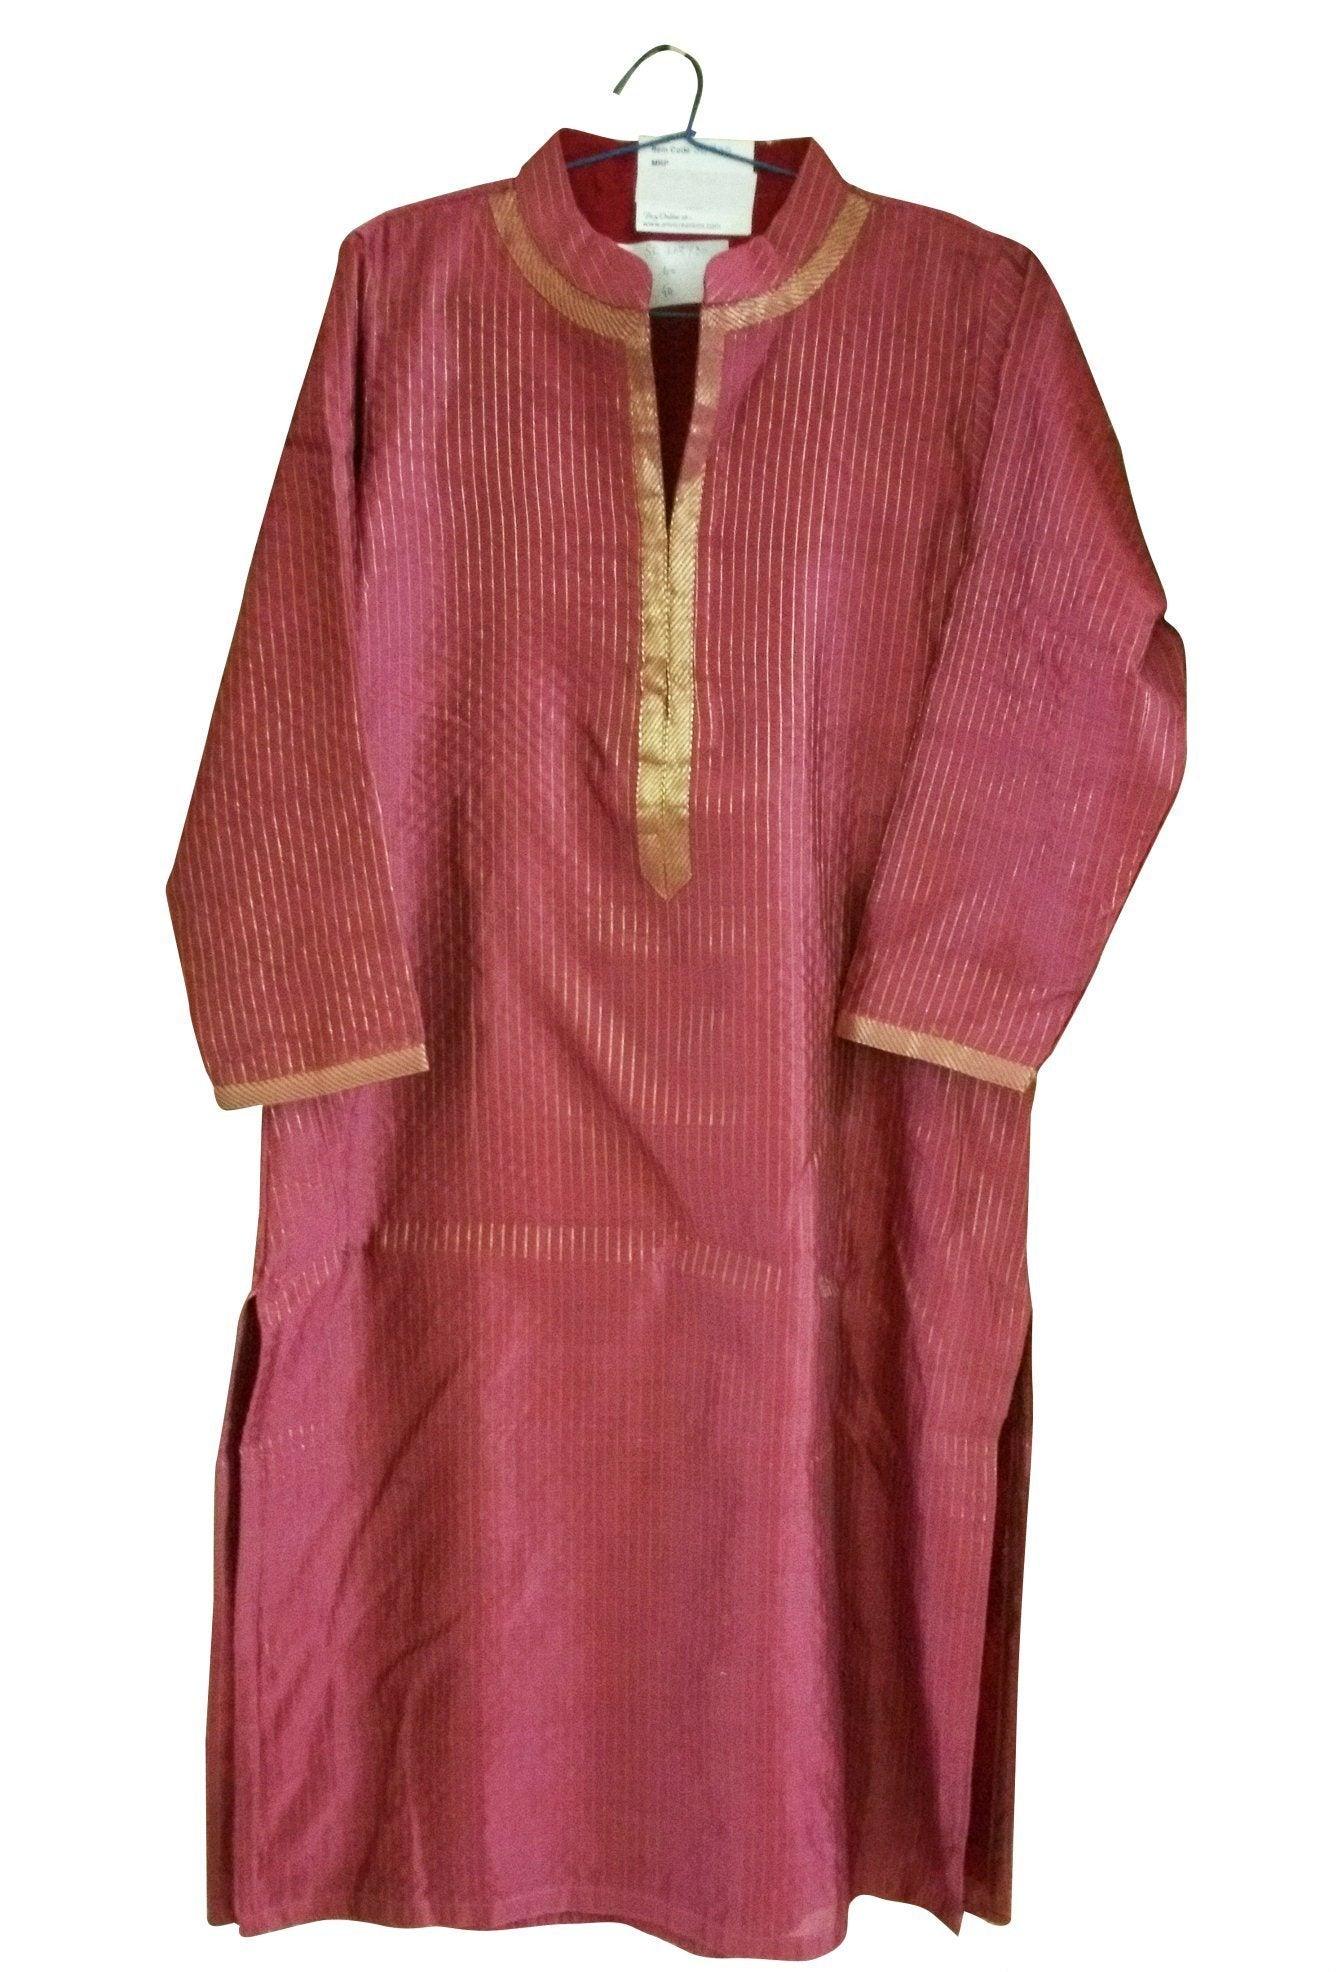 Onion Pink Lurex Cotton Silk Stitched Kurta Size 38 SC730-Anvi Creations-Kurta,Kurti,Top,Tunic